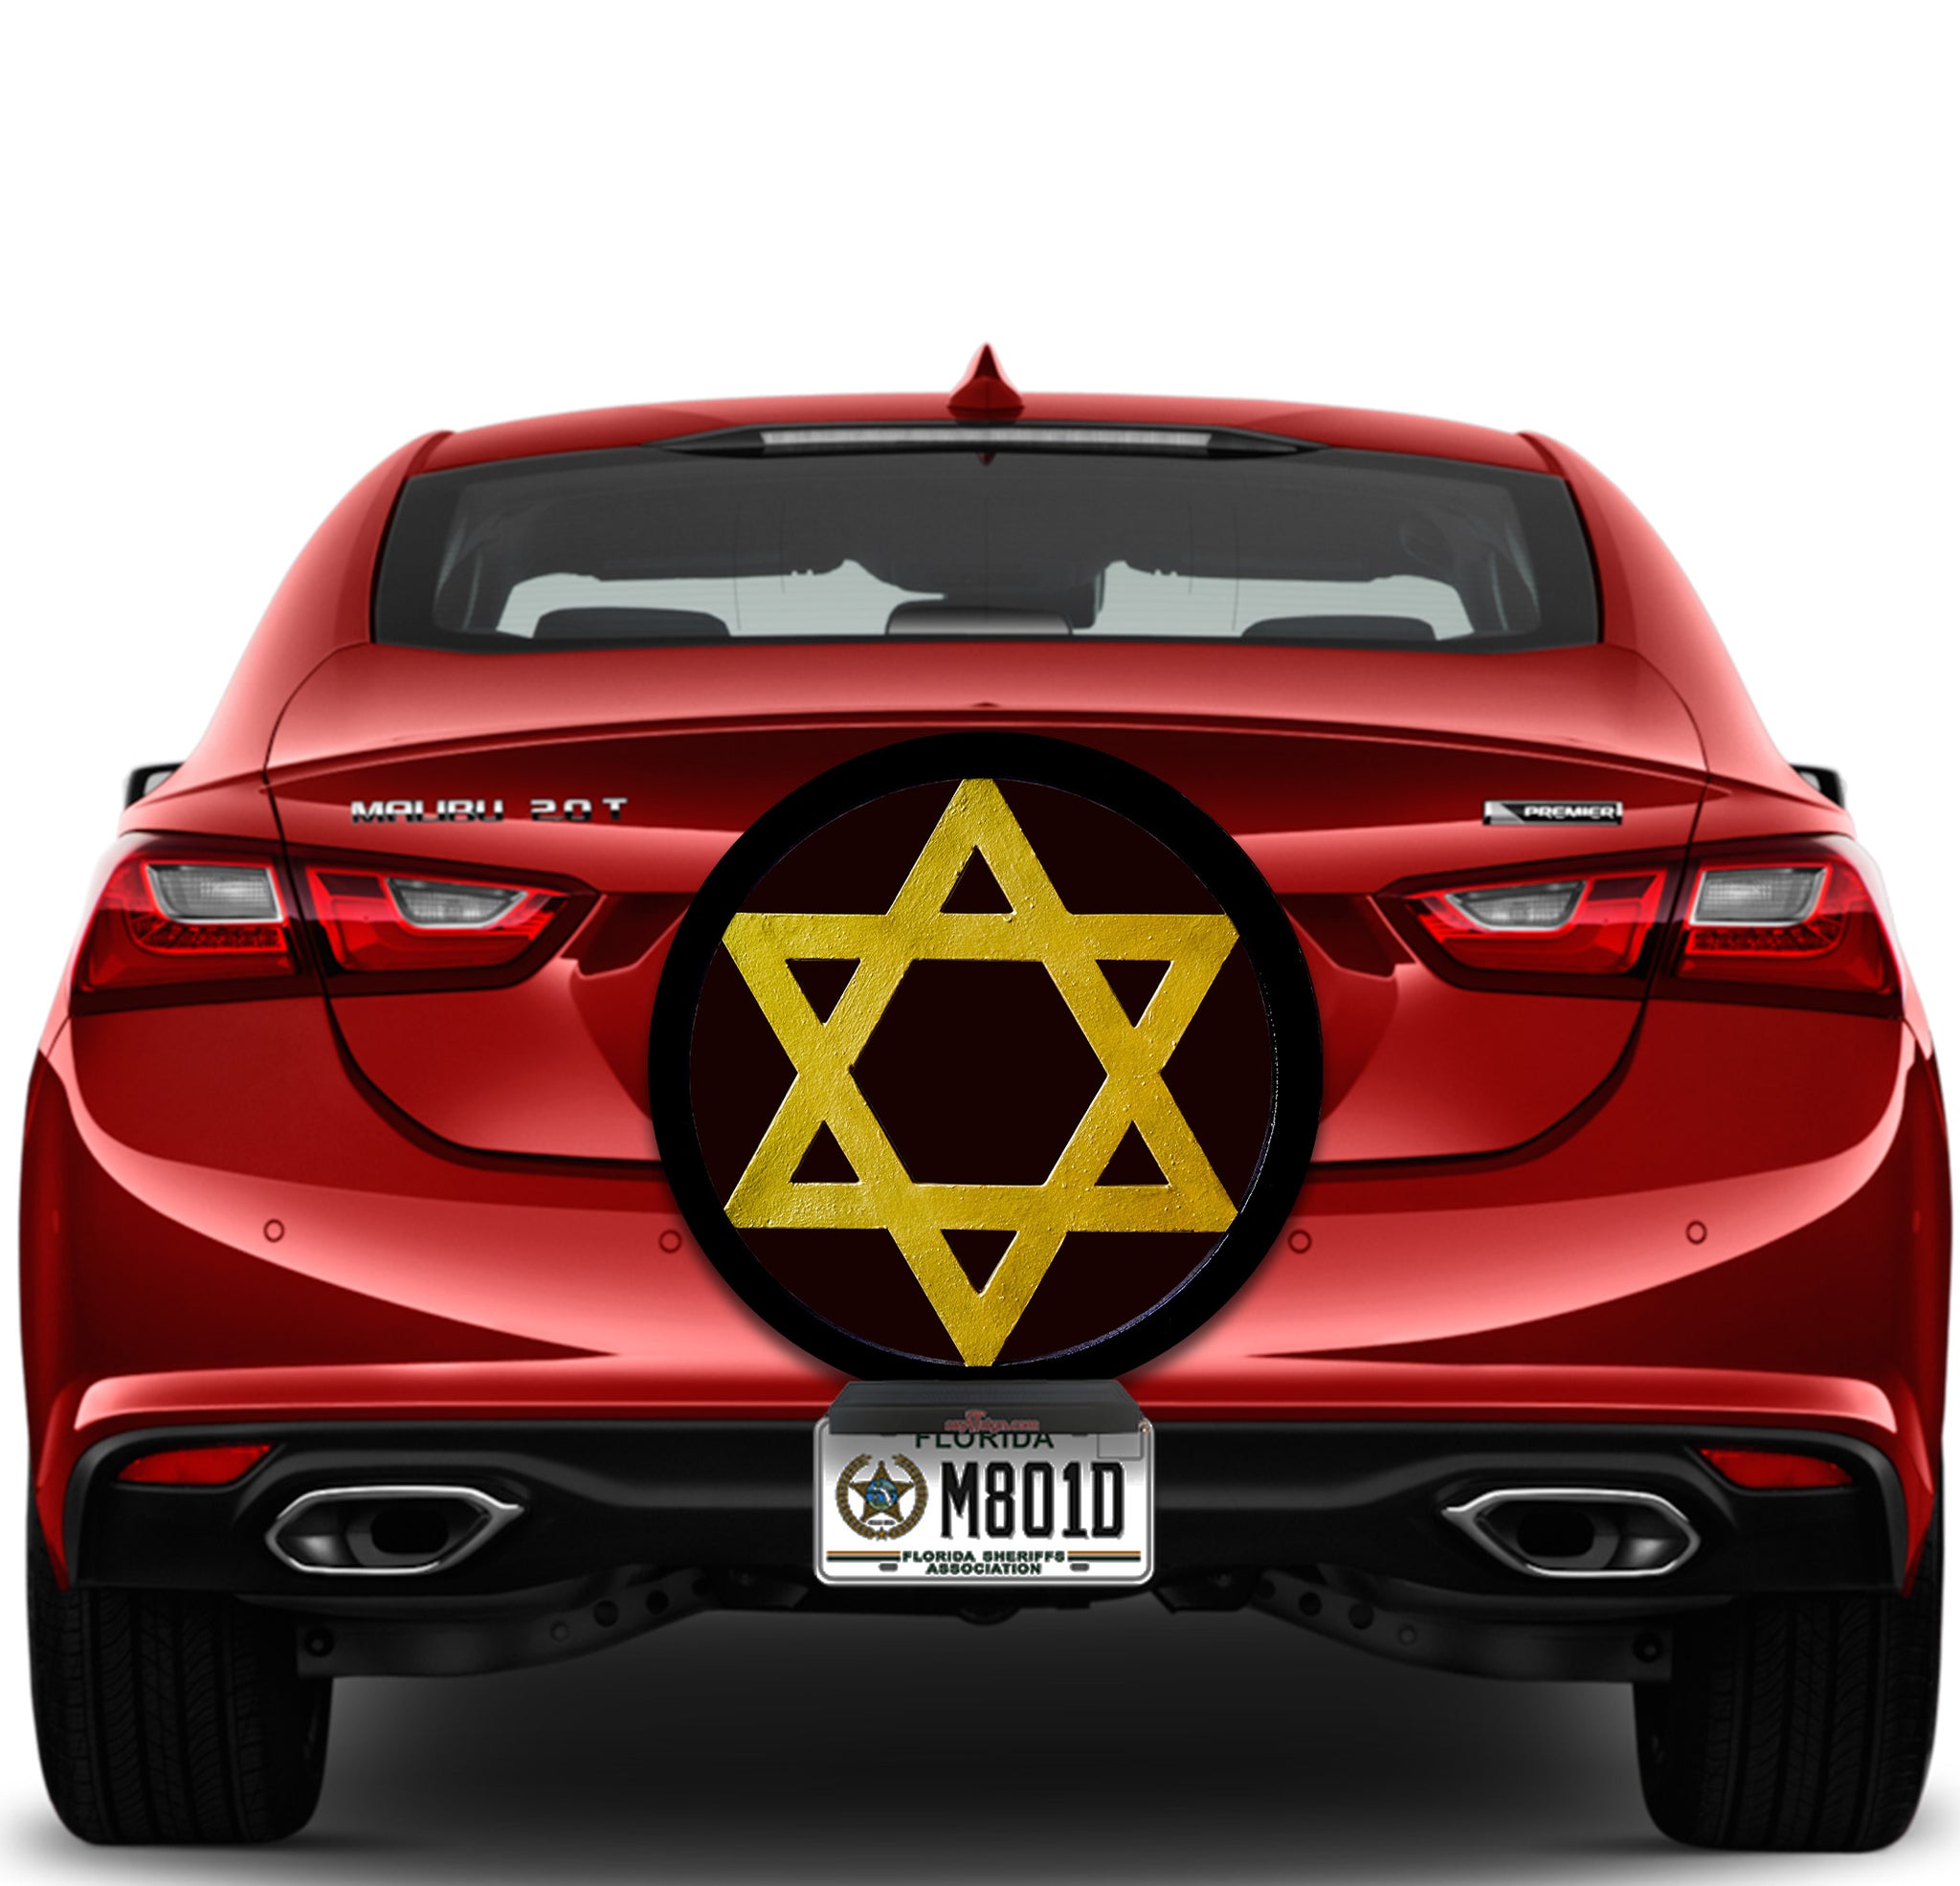 Jewish Star